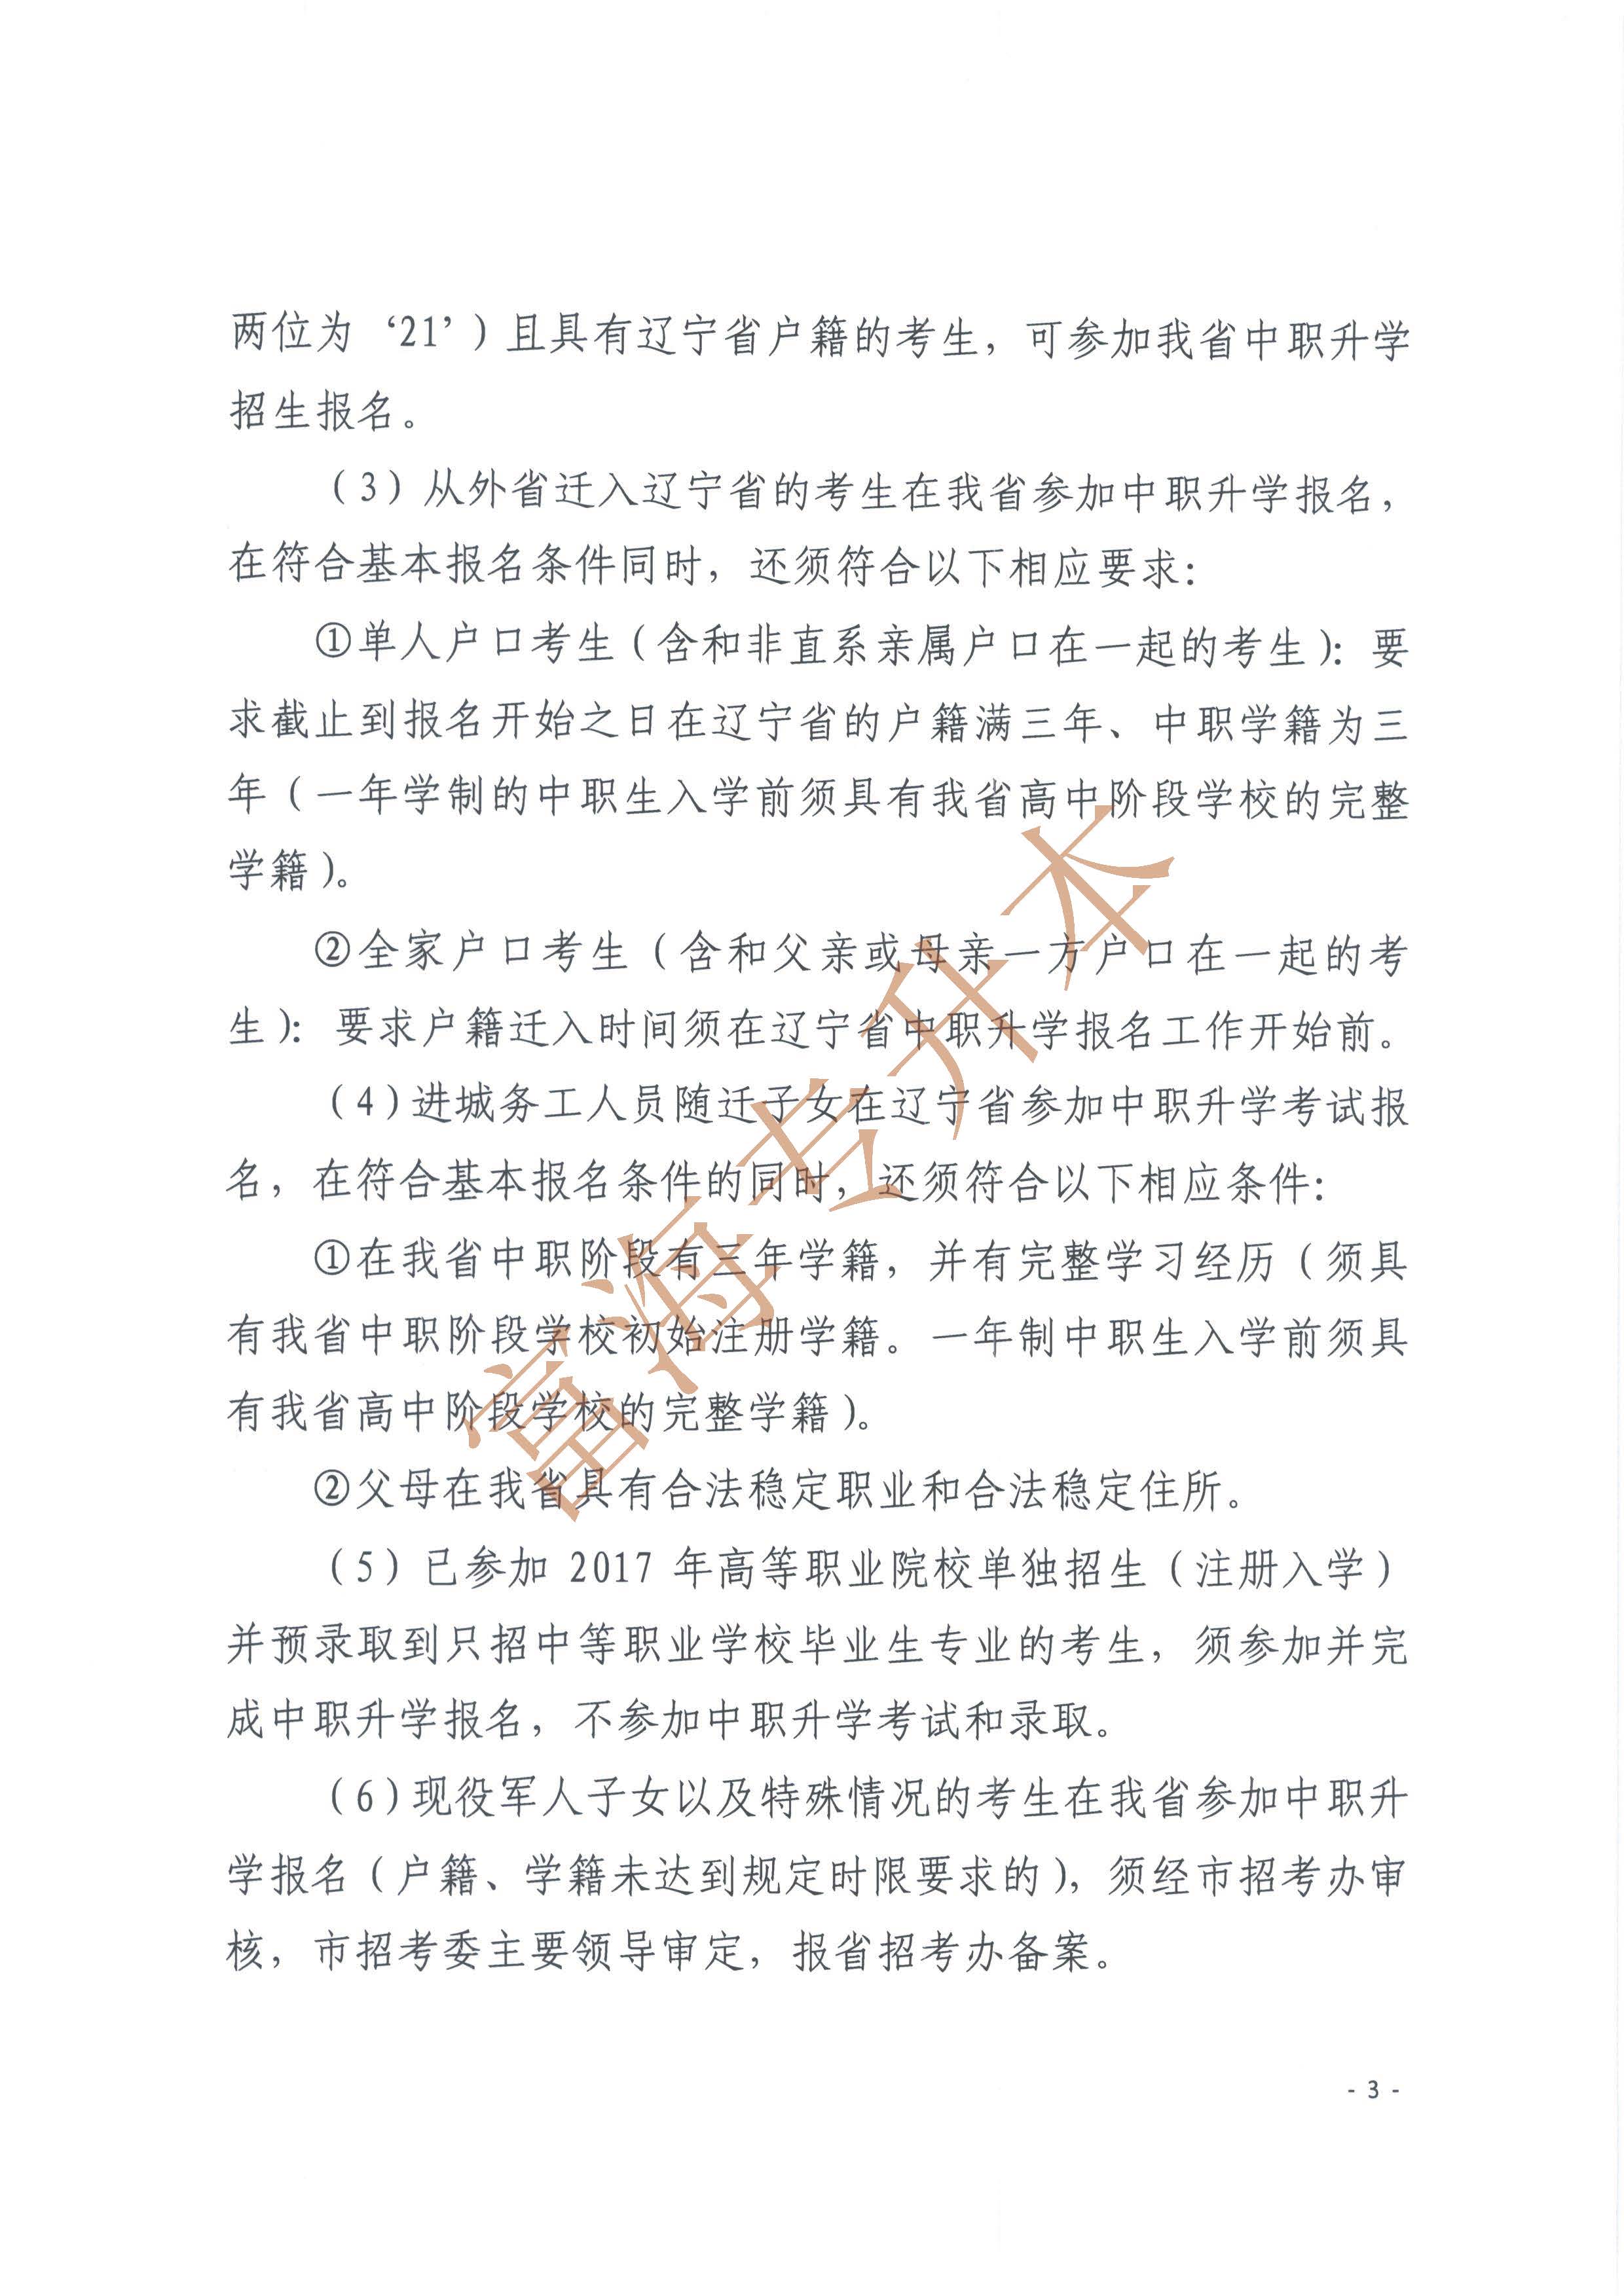 辽宁省2017年职业教育对口升学考试招生工作实施办法的通知3